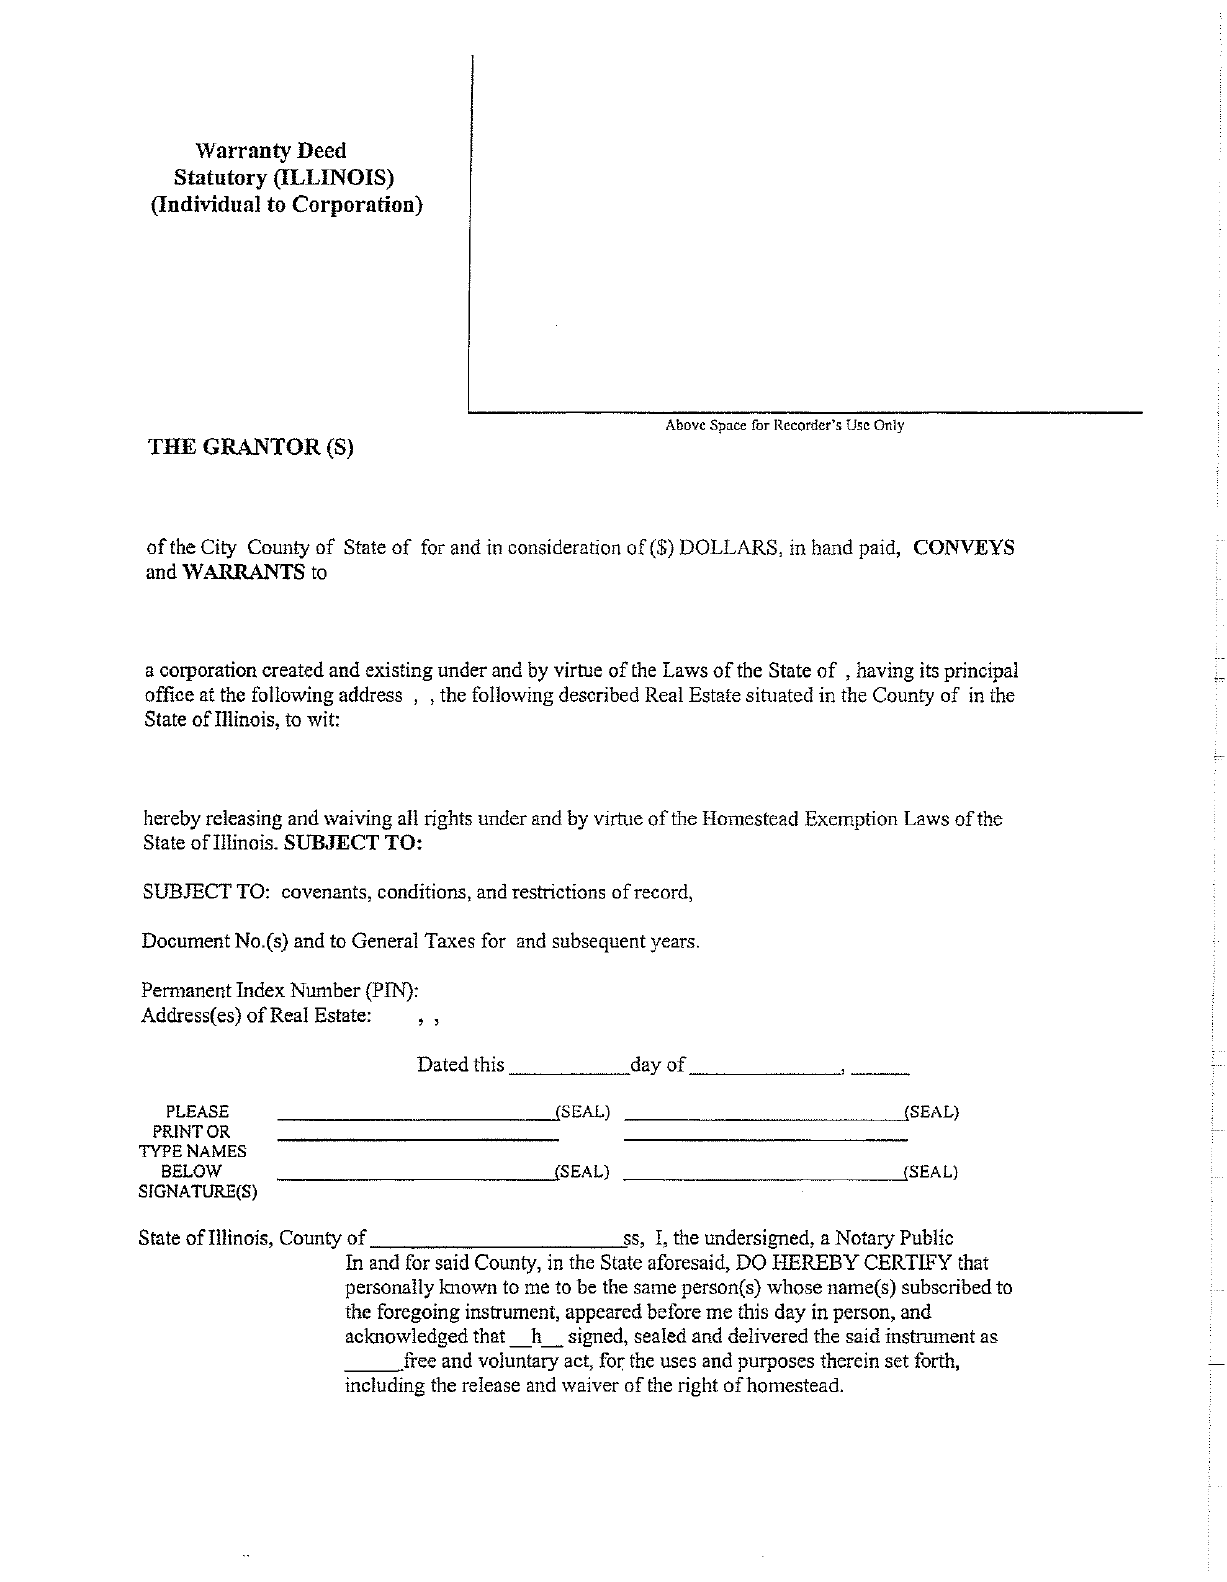 florida-warranty-deed-form-printable-pdf-download